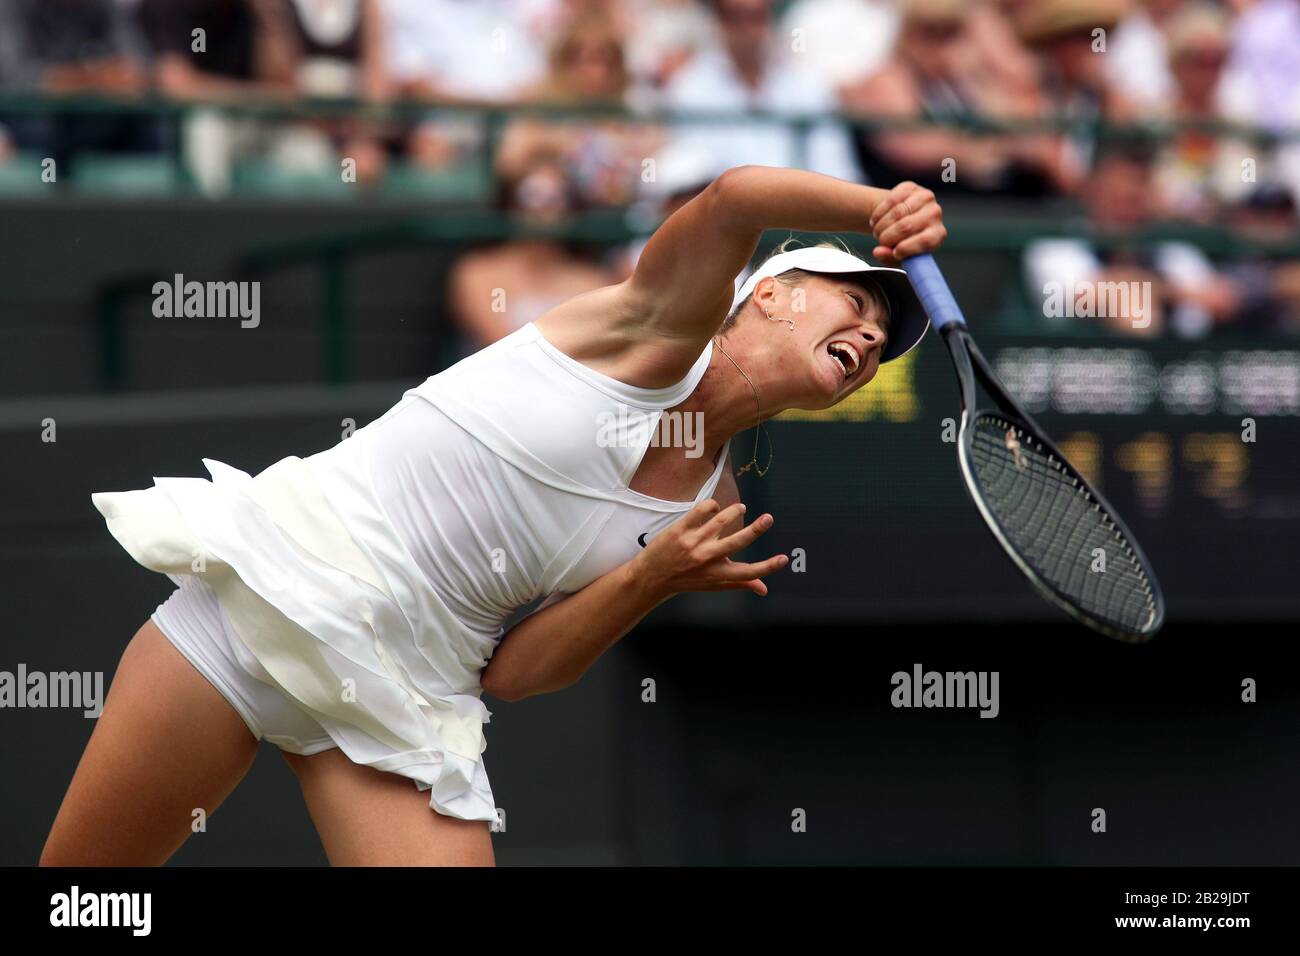 24 juin 2010 : Wimbledon, Royaume-Uni : Maria Sharapova en action lors de son second match contre Joana Raluca Olaru, de Roumanie, lors des championnats de Wimbledon de 2010 Banque D'Images